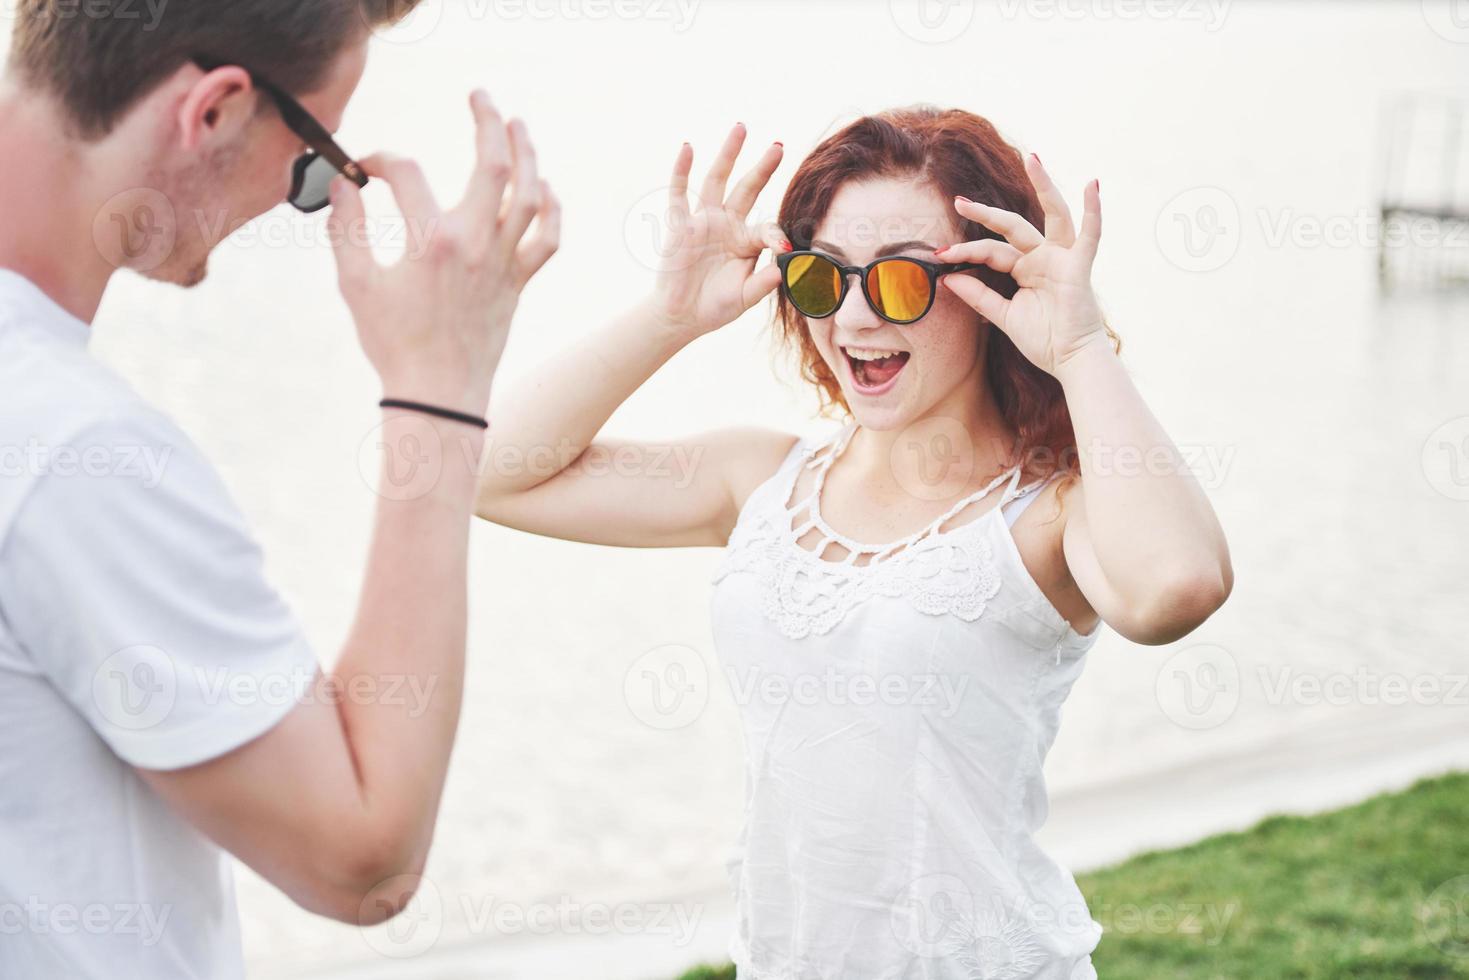 vrolijke, speelse vrouw met haar man in zonnebril foto